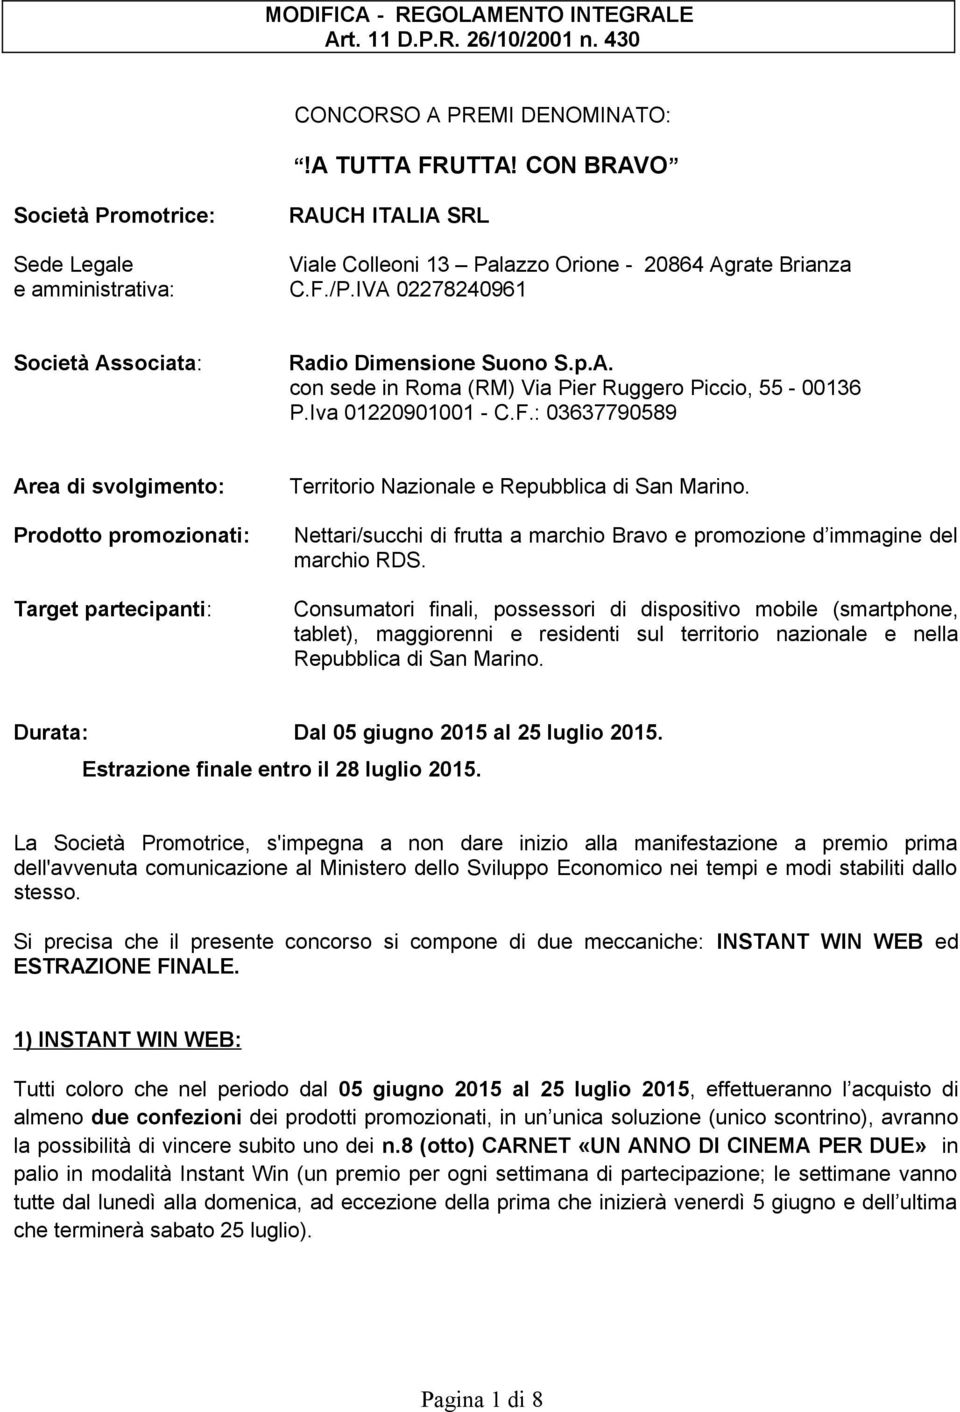 p.A. con sede in Roma (RM) Via Pier Ruggero Piccio, 55-00136 P.Iva 01220901001 - C.F.